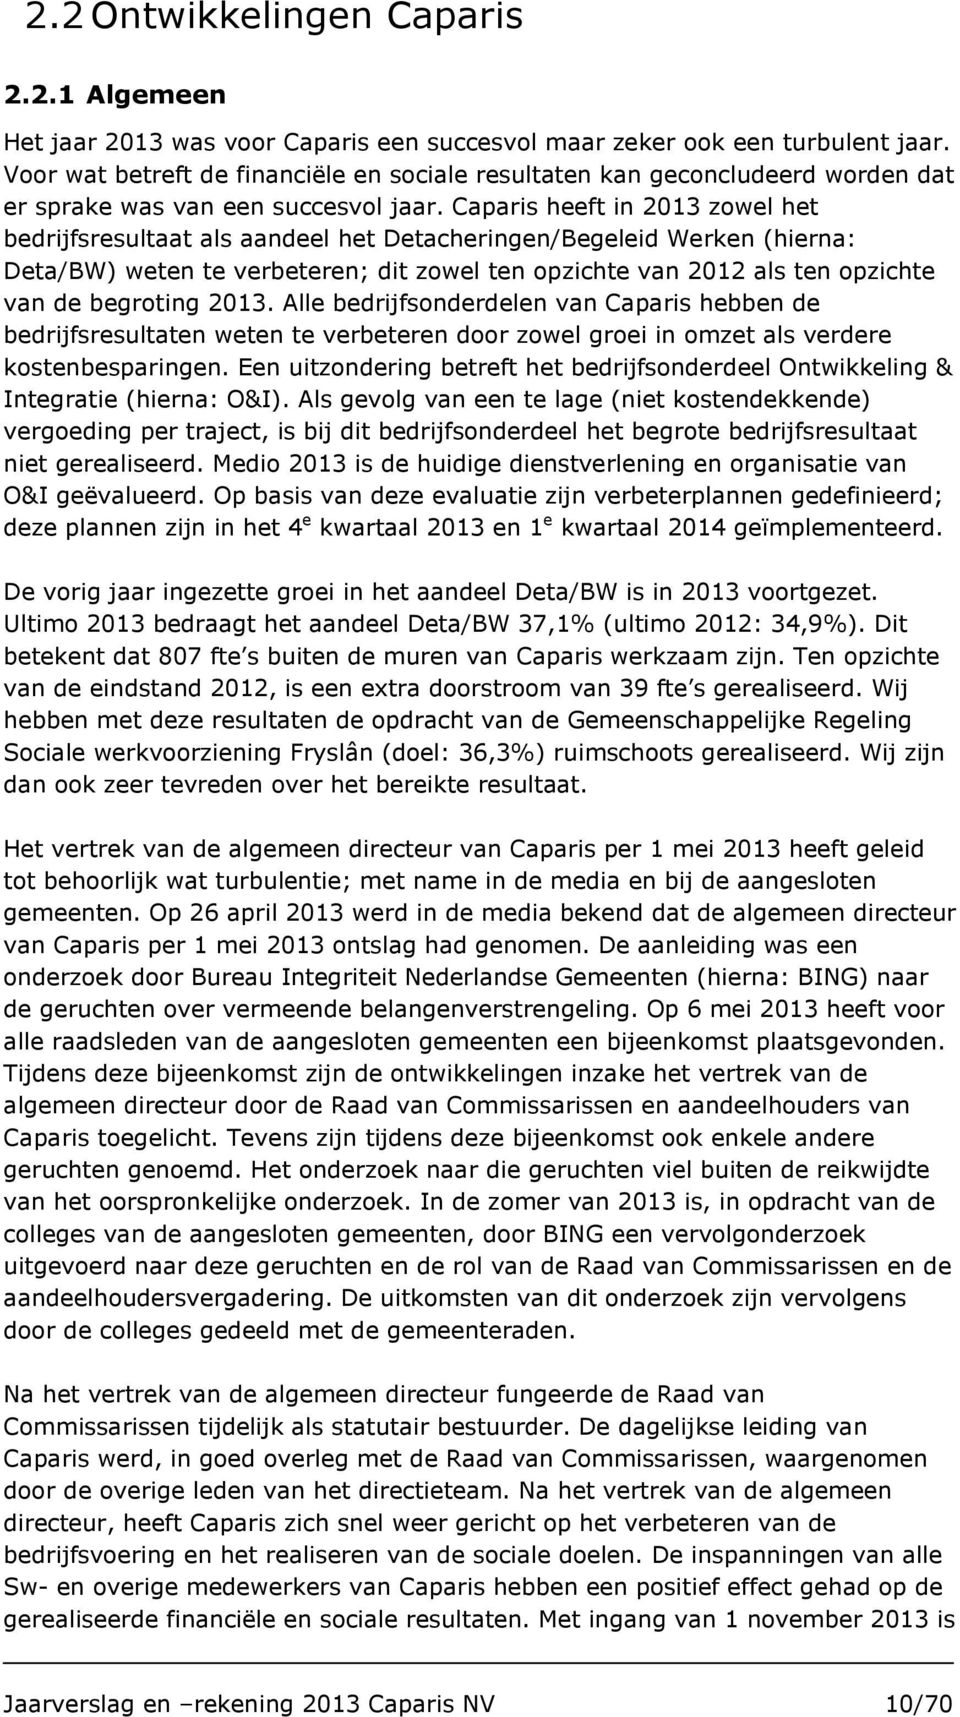 Caparis heeft in 2013 zowel het bedrijfsresultaat als aandeel het Detacheringen/Begeleid Werken (hierna: Deta/BW) weten te verbeteren; dit zowel ten opzichte van 2012 als ten opzichte van de